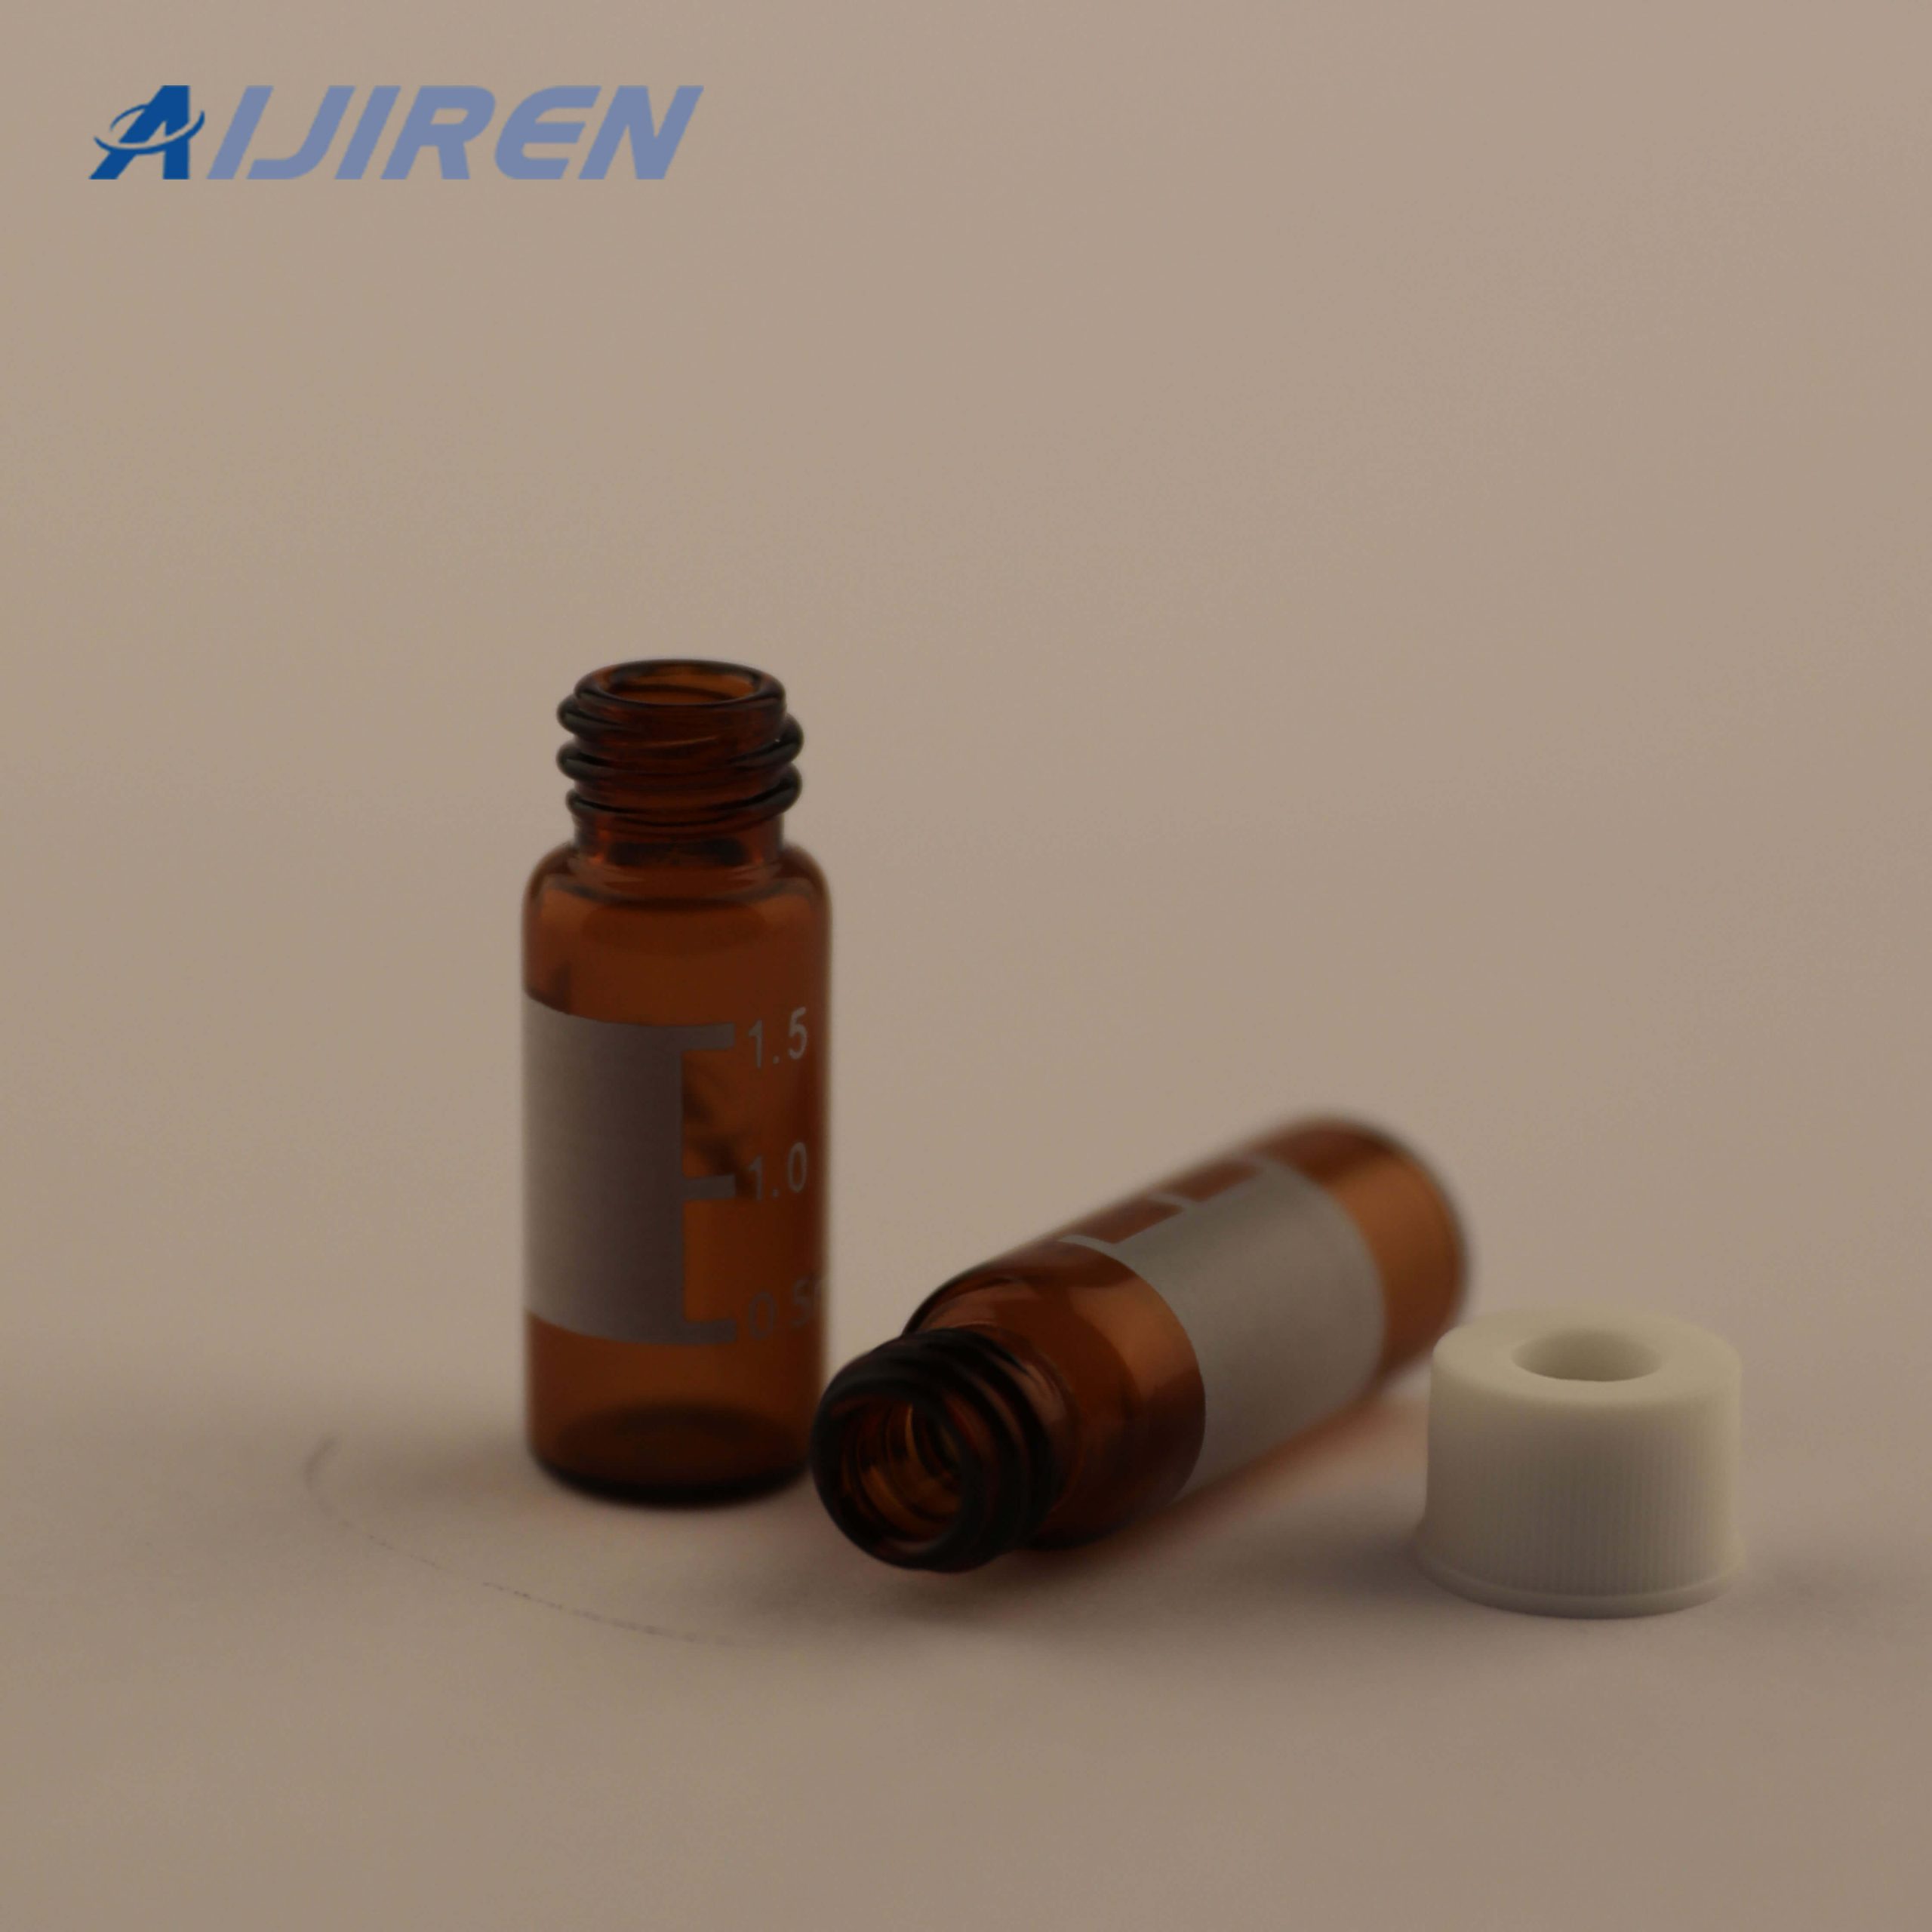 9mm Amber Glass Screw Top Vials for Aijiren